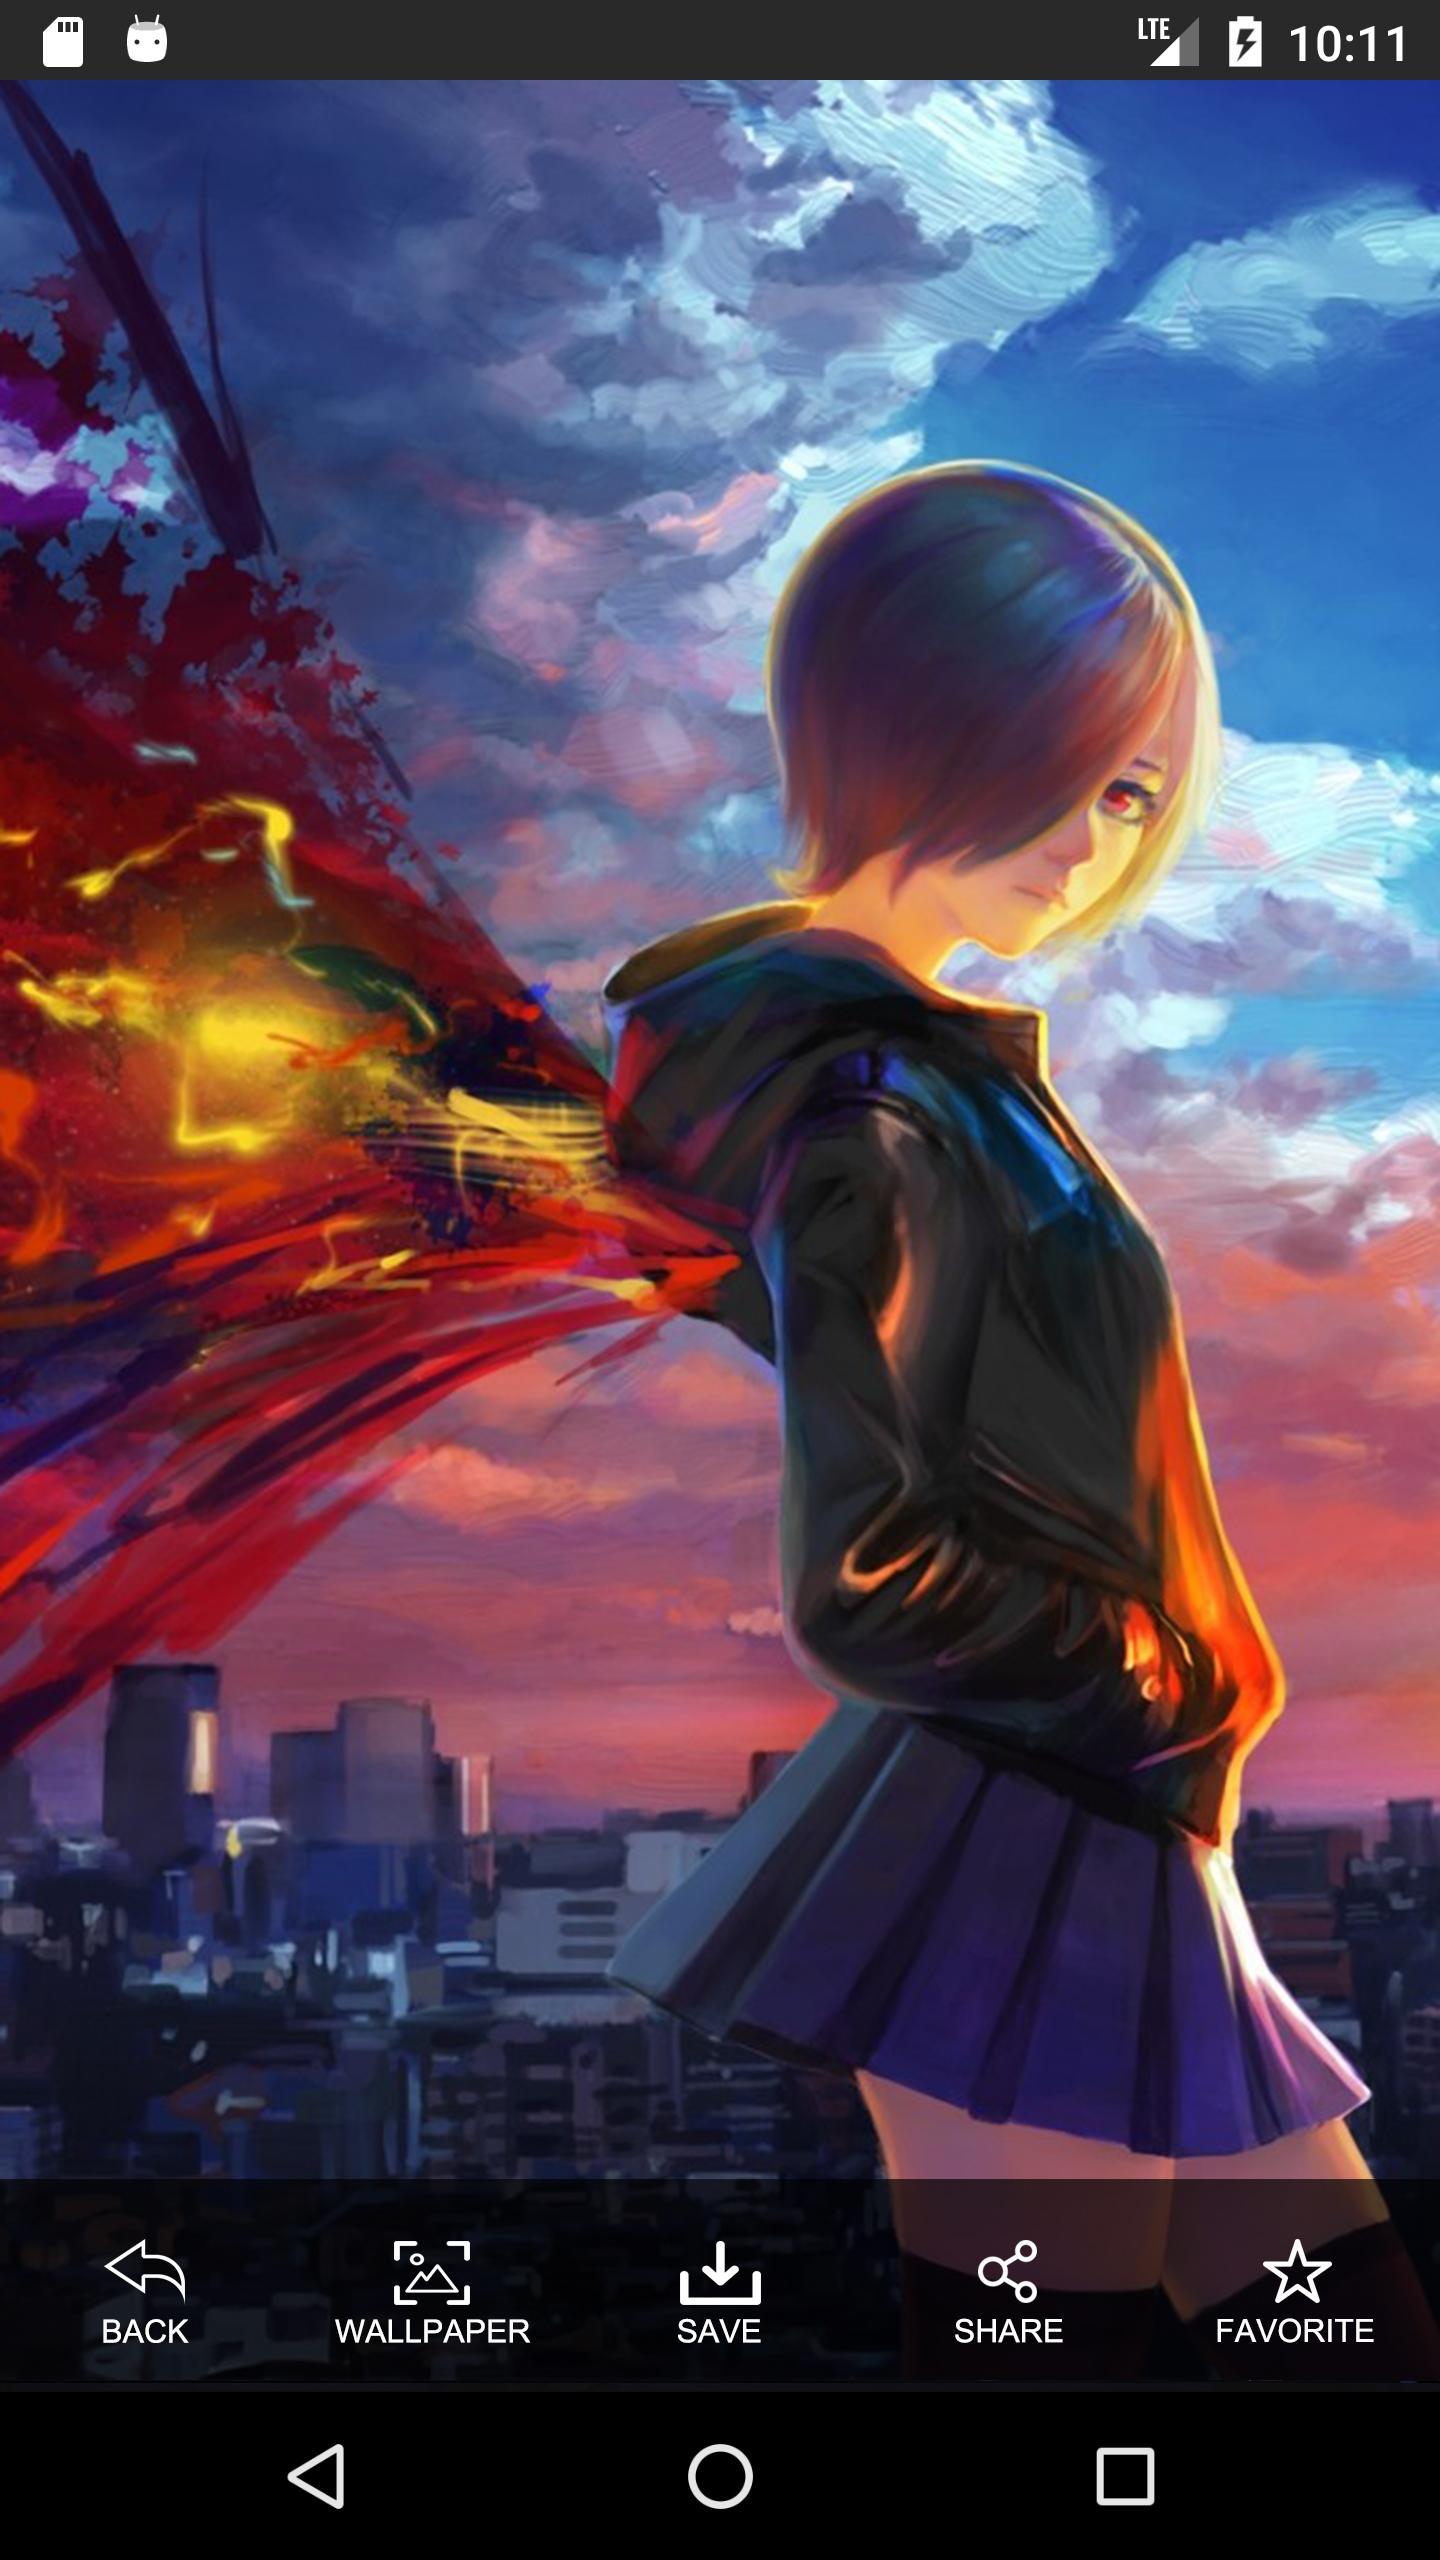 Download Gambar Wallpaper Android Anime Girl terbaru 2020